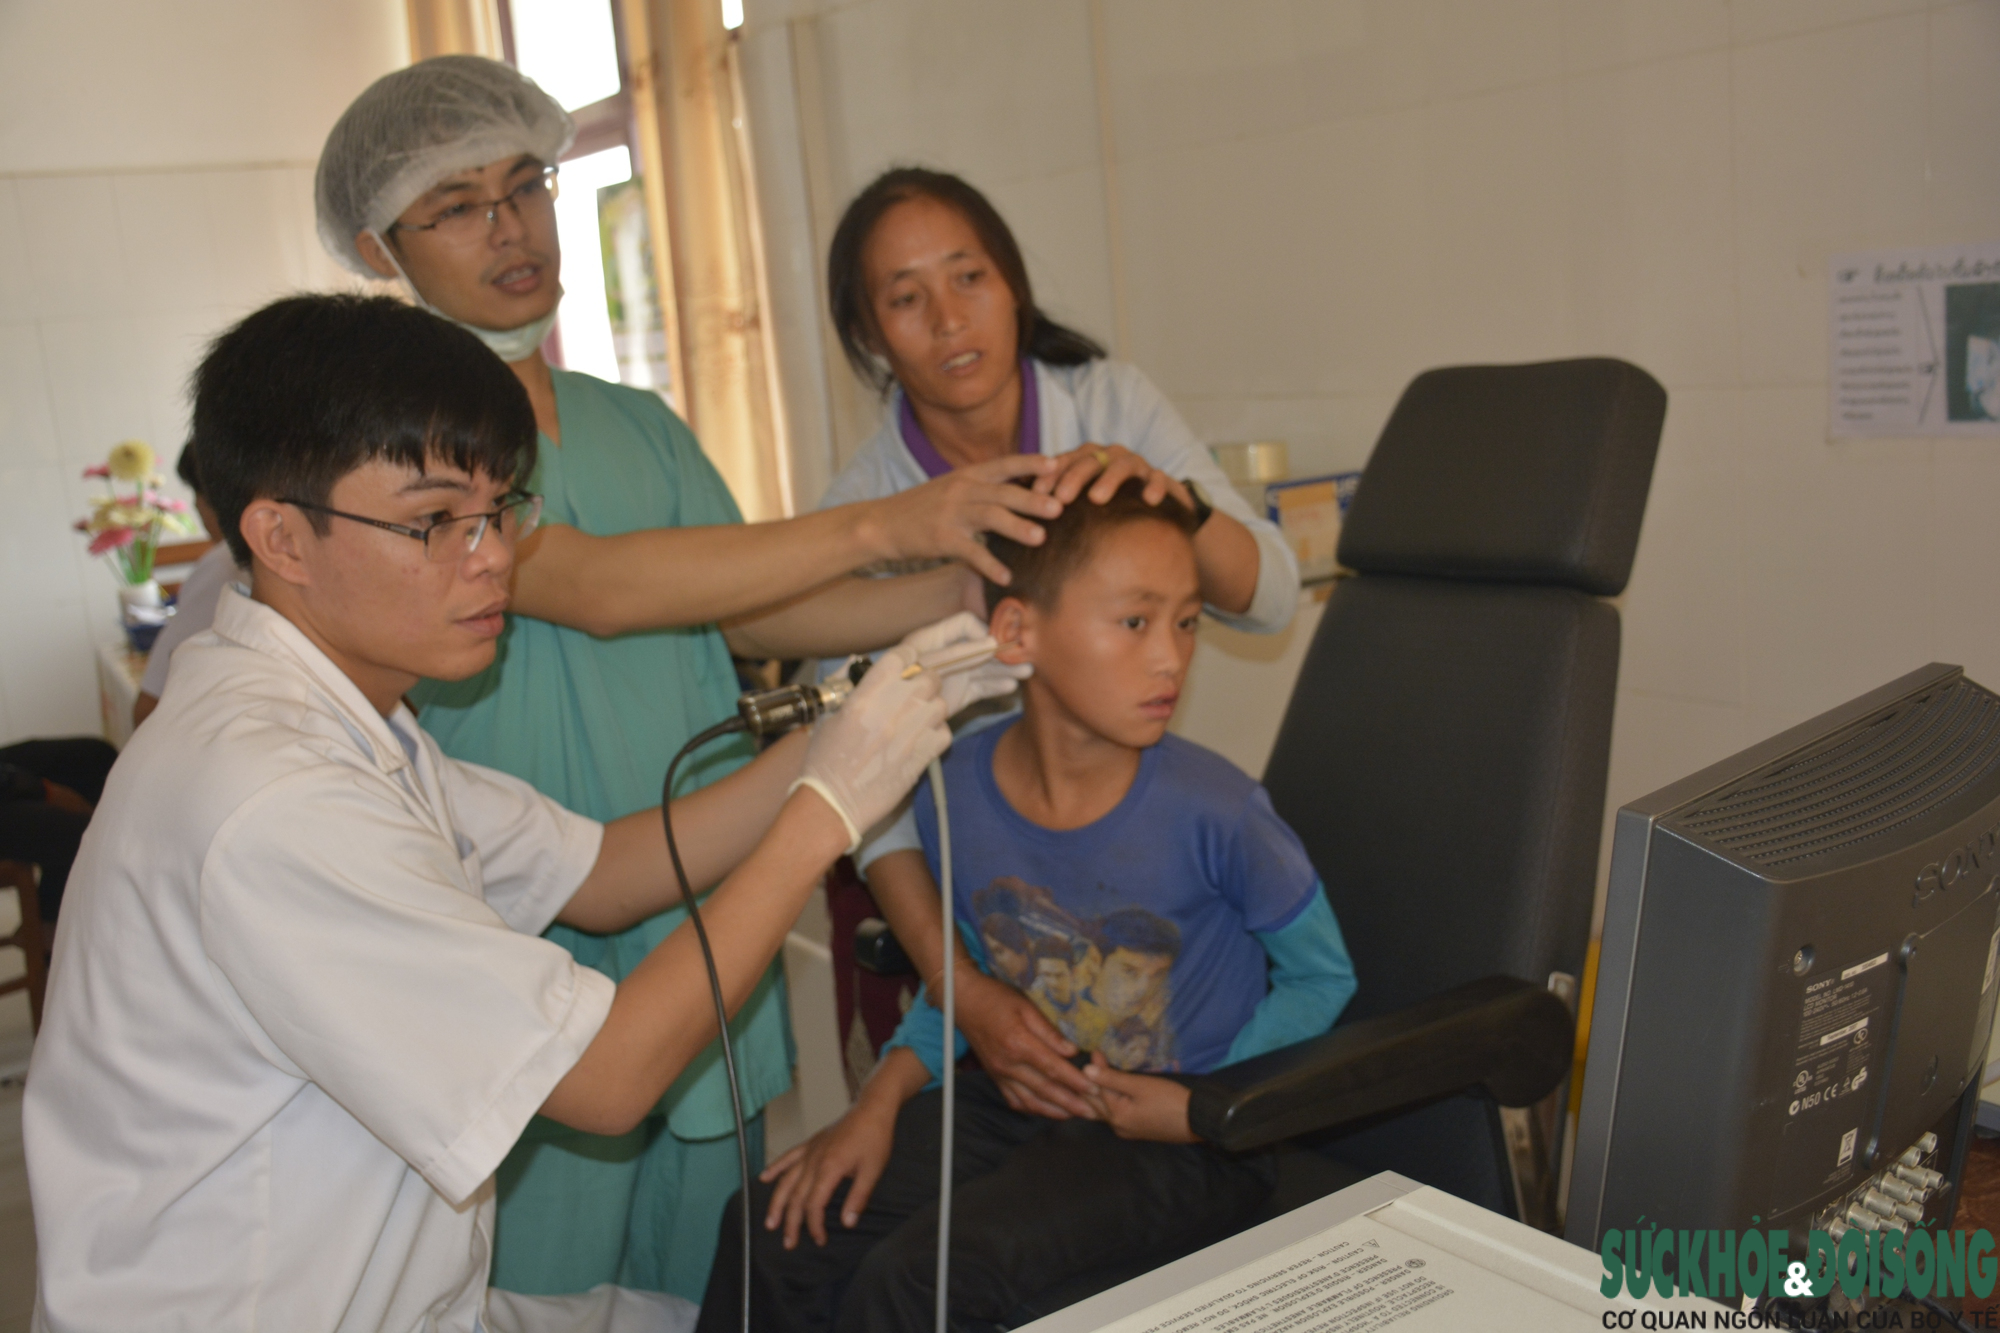 Chuyển giao kỹ thuật giúp bệnh viện nước bạn Lào phát triển  - Ảnh 1.